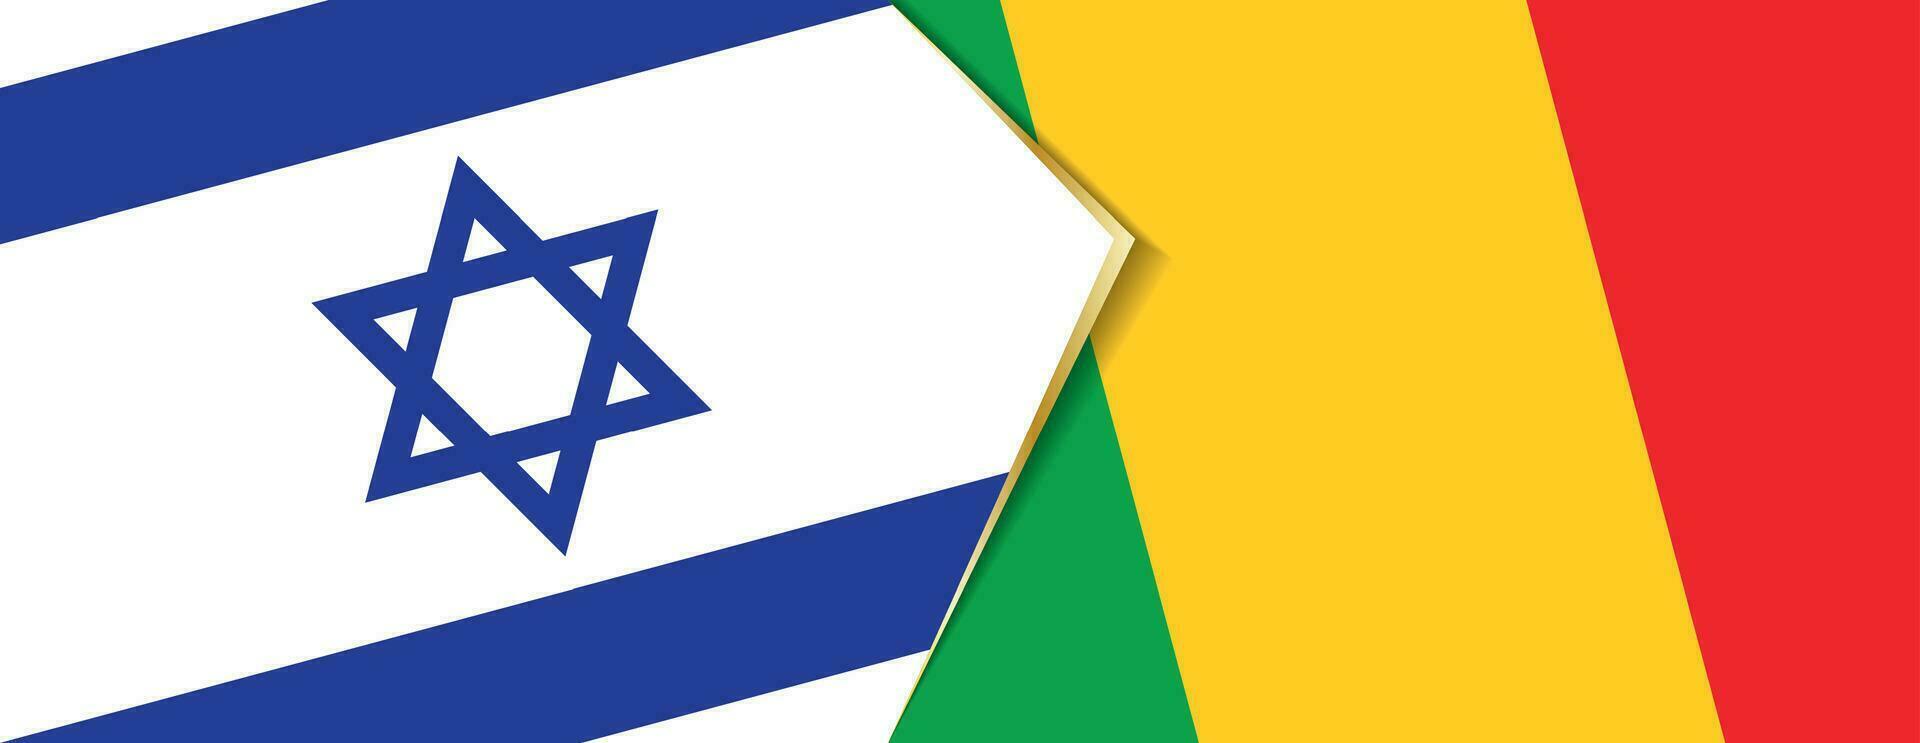 Israel och mali flaggor, två vektor flaggor.